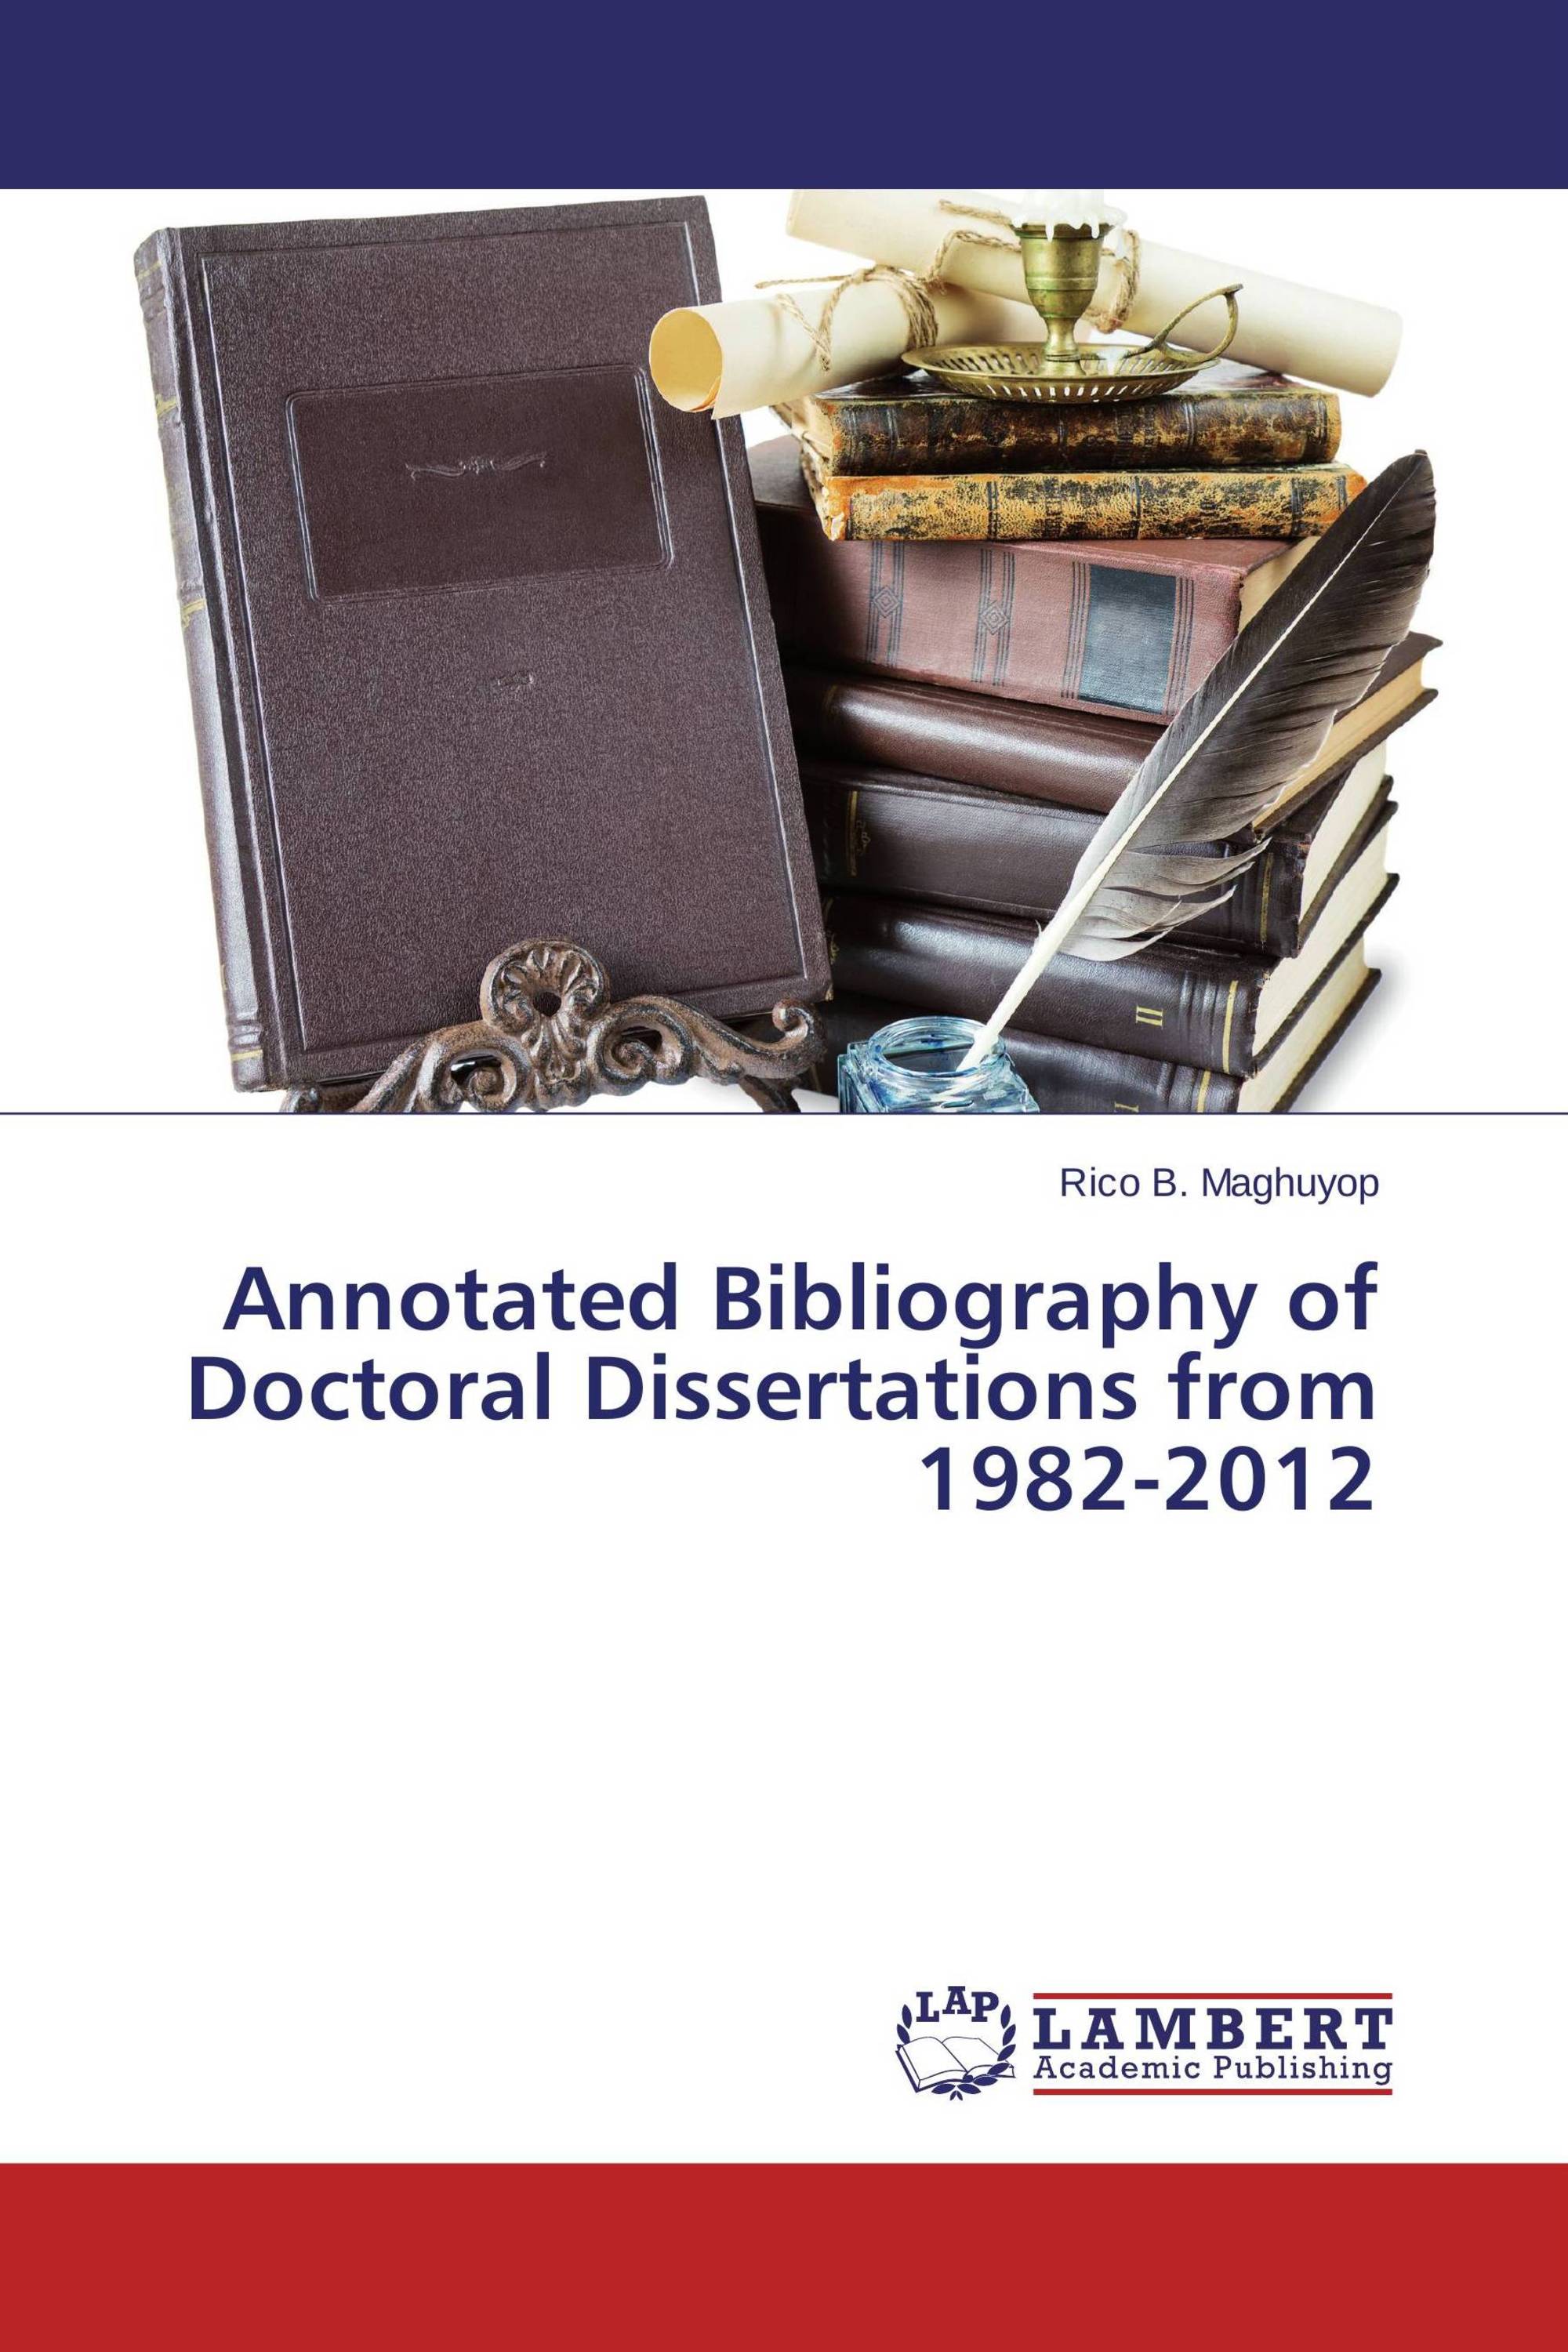 origin of dissertations